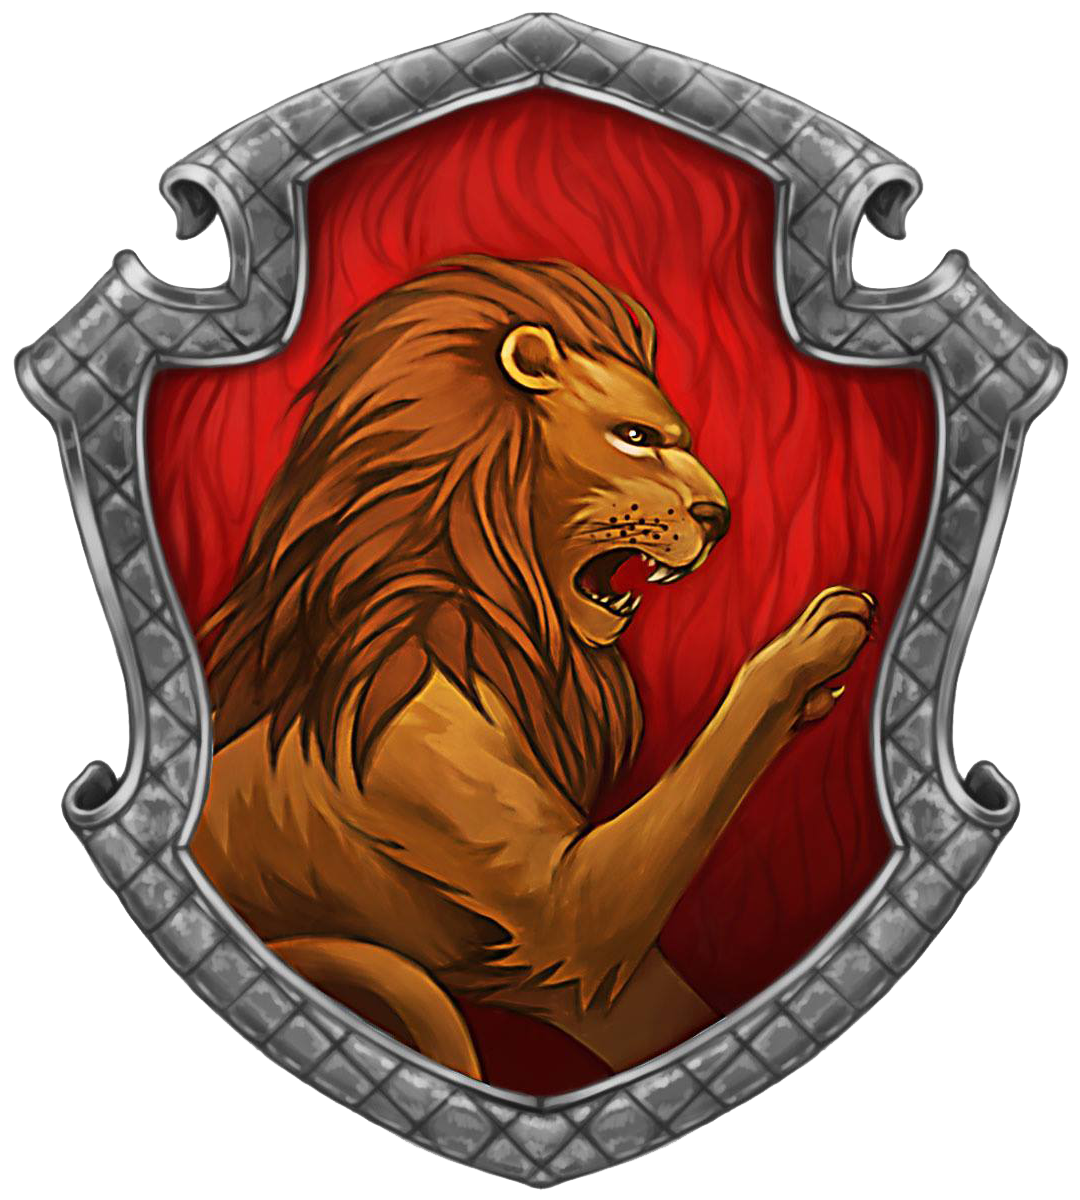 Image Gryffindor Crest Transparentpng Harry Potter Fanon Wiki